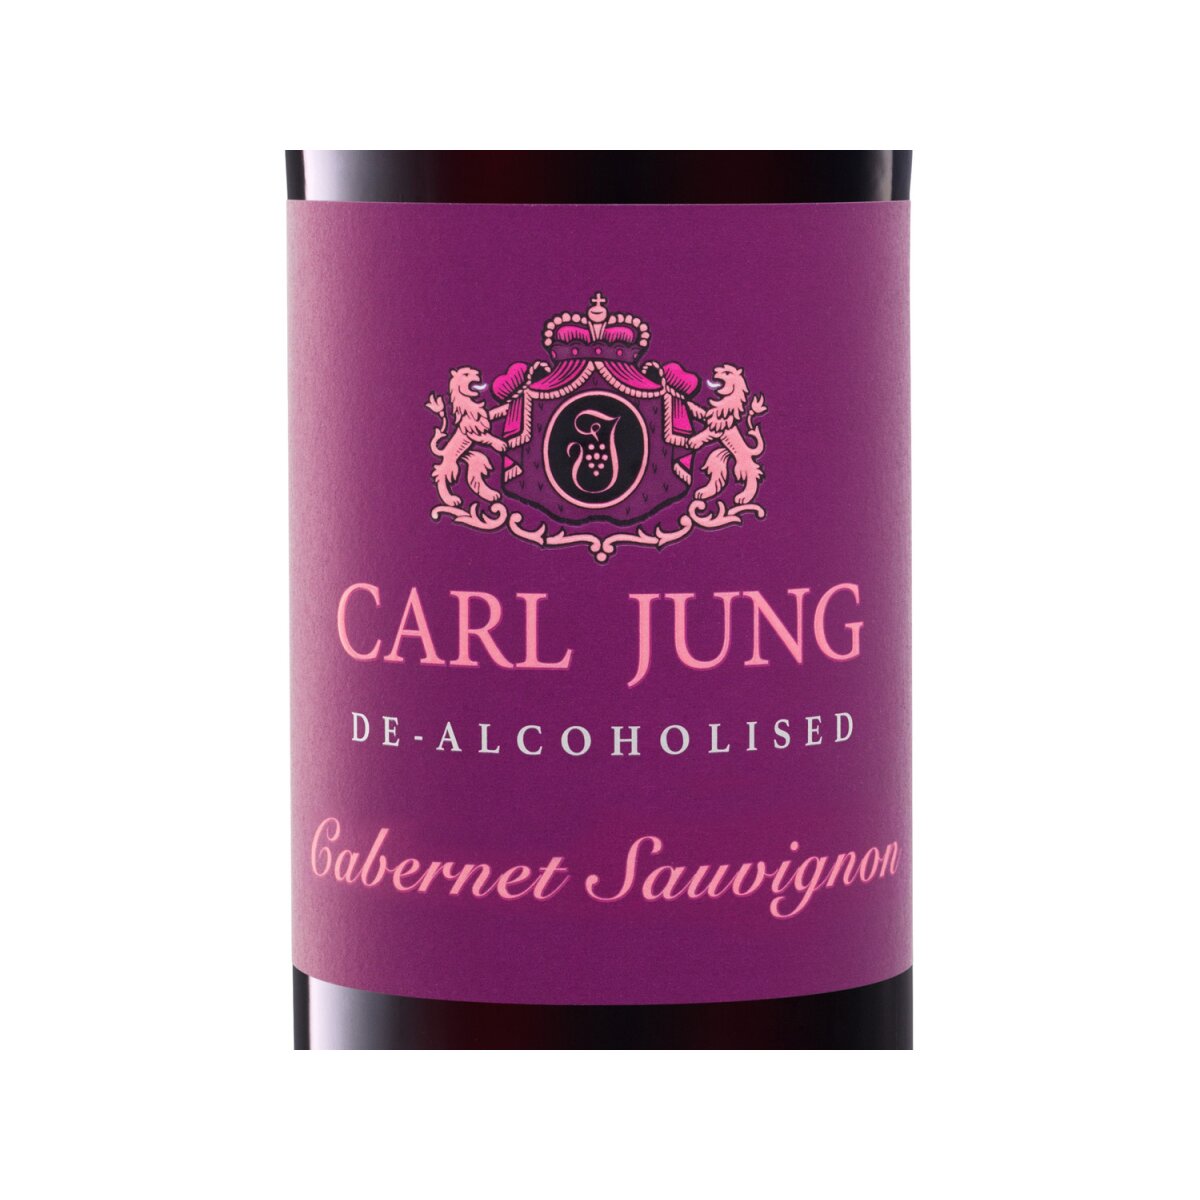 Carl Jung Cabernet Sauvignon vegan, alkoholfreier Rotwein, 4,99 €